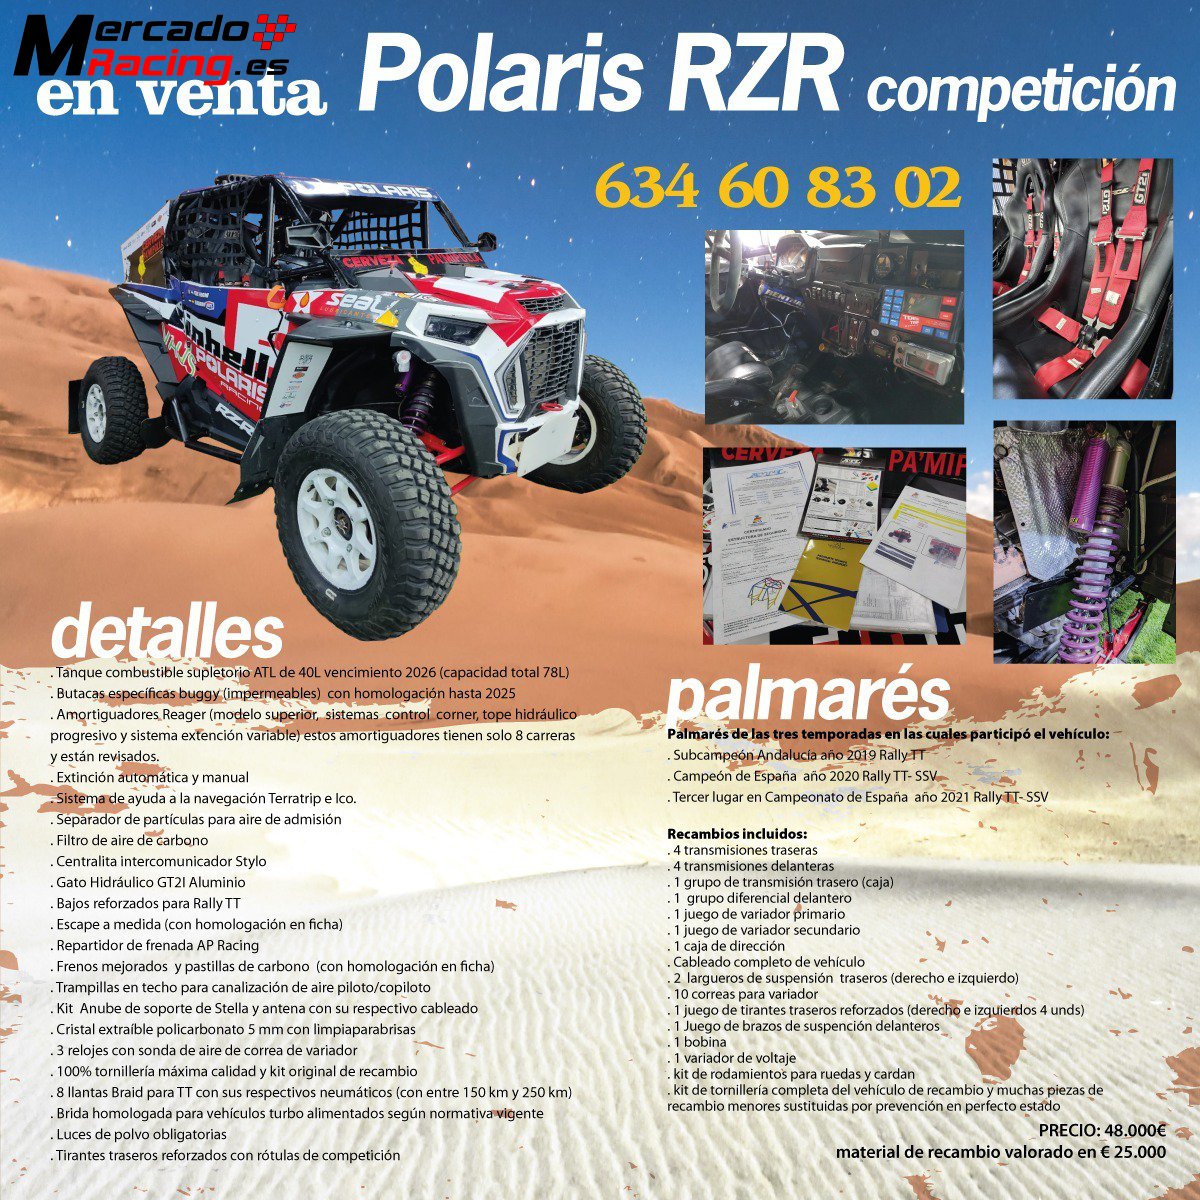 Polaris rzr xp 1000 turbo especificaciones ssv federacion española